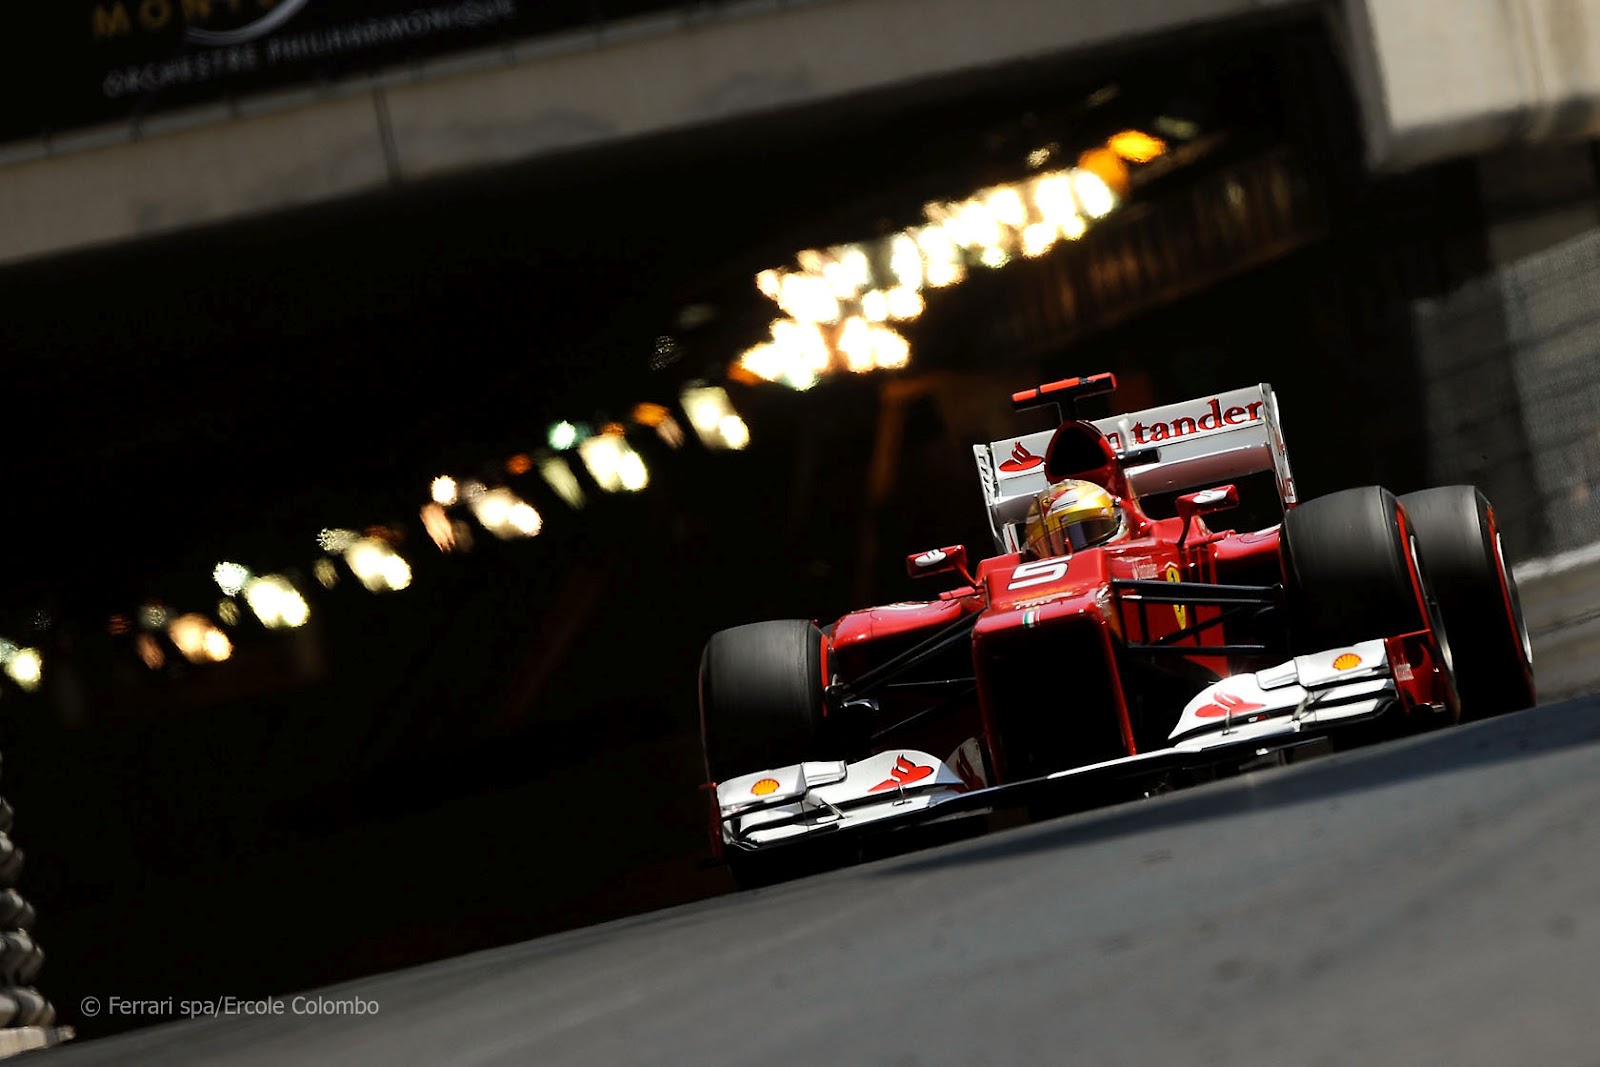 http://3.bp.blogspot.com/-u_qgIpLB1RE/UBHIetdIWoI/AAAAAAAAB1A/m2YtqAe9K5o/s1600/Ferrari+Alonso+Monaco+2012-10.jpg